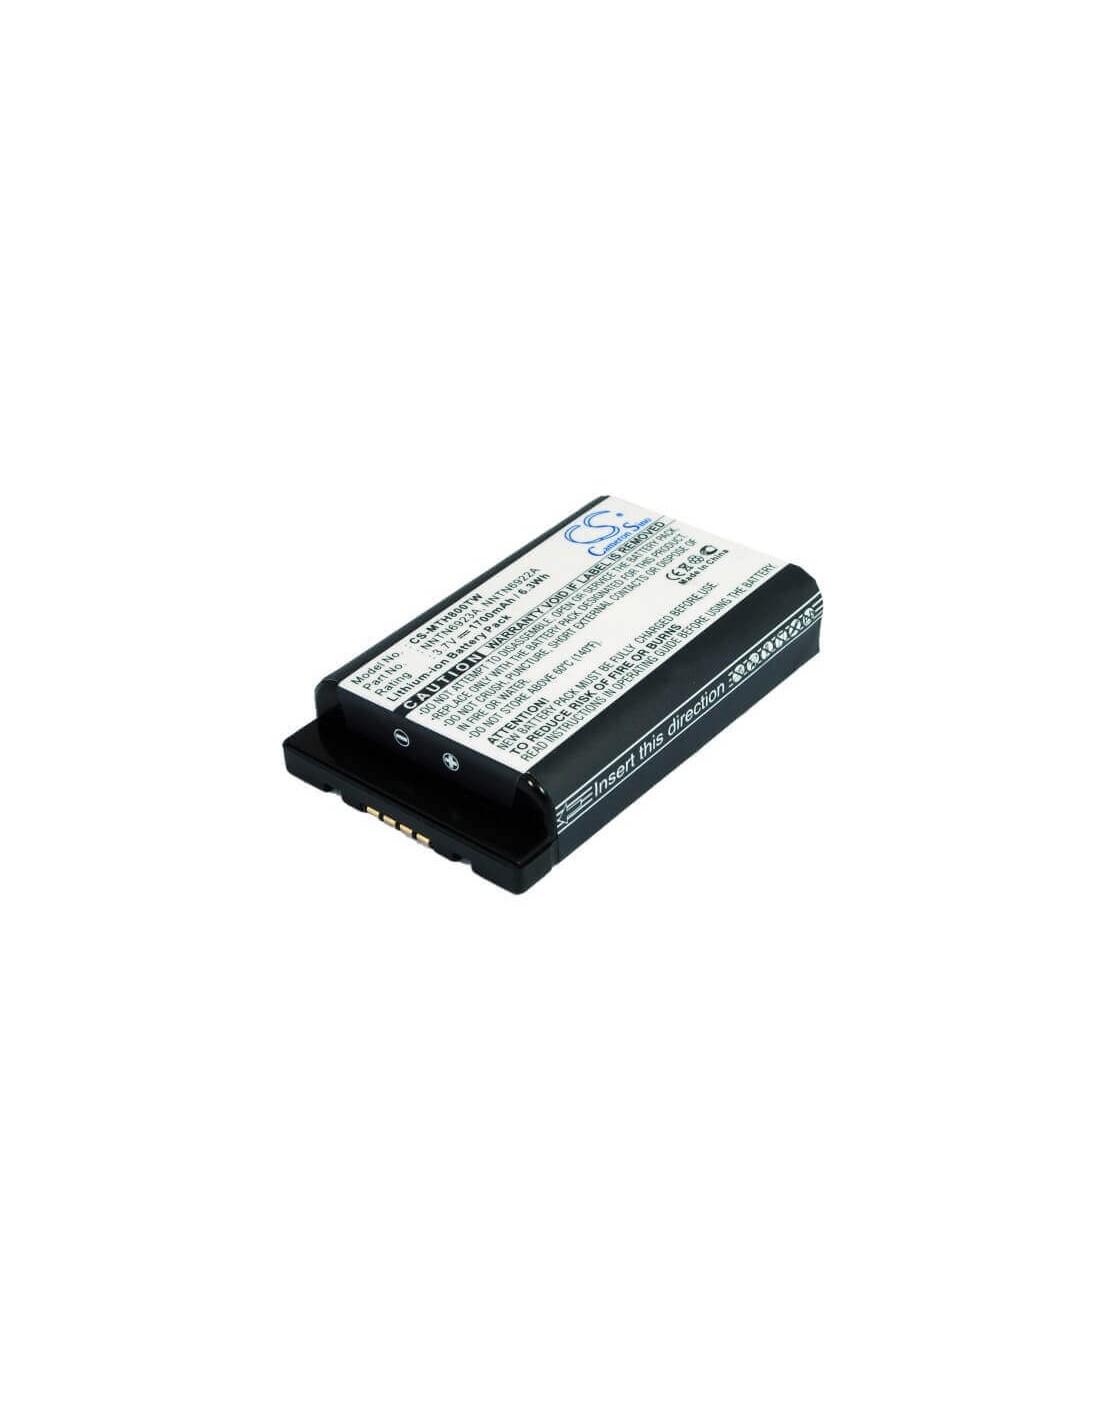 Battery for Motorola Mth800, Mth650 3.7V, 1700mAh - 6.29Wh